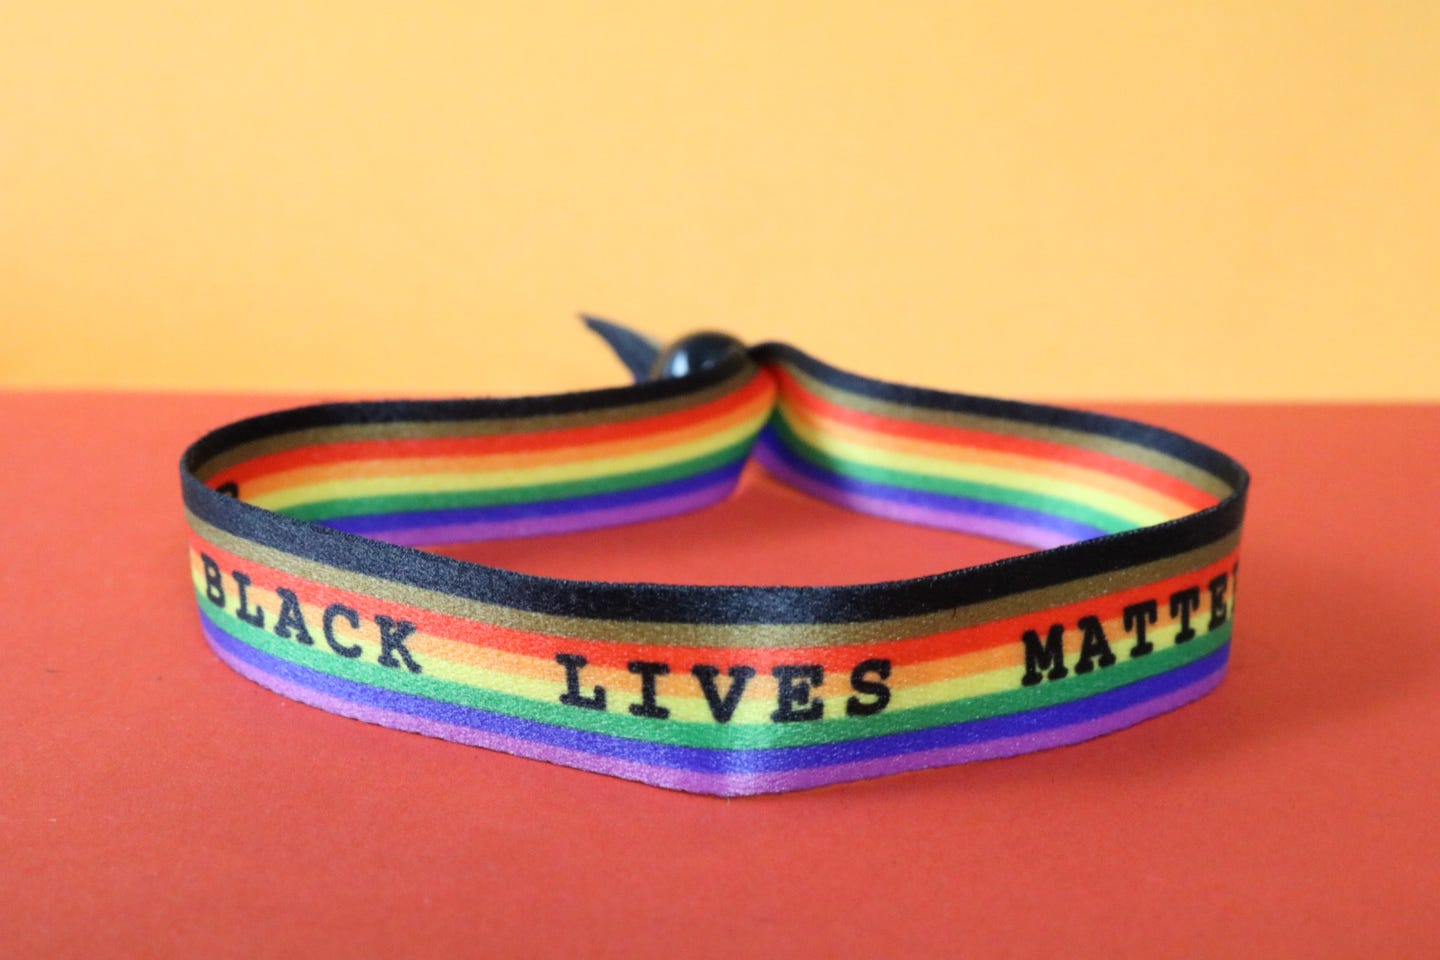 Festival Bracelet (BLACK LIVES MATTER)